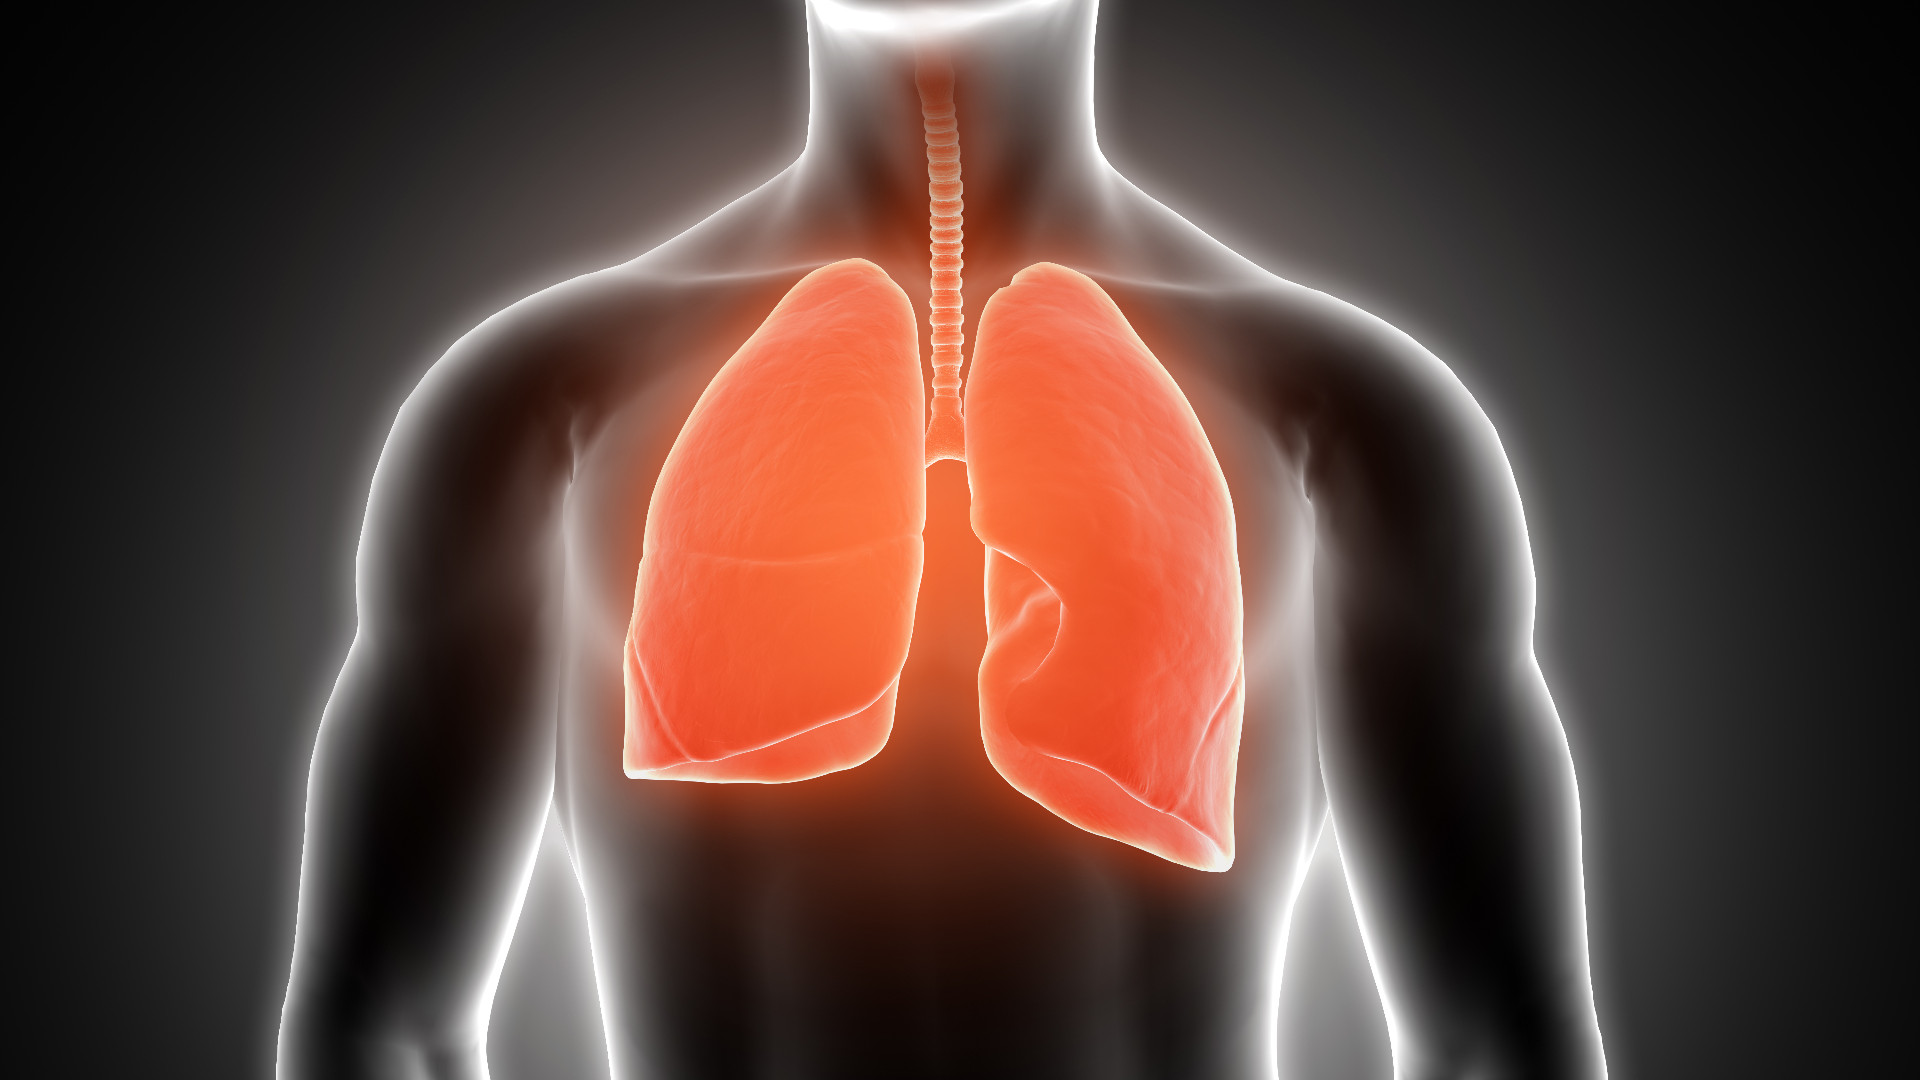 Foto de capa do artigo "Câncer de pulmão: o que é, sintomas, tratamento, tem cura?"